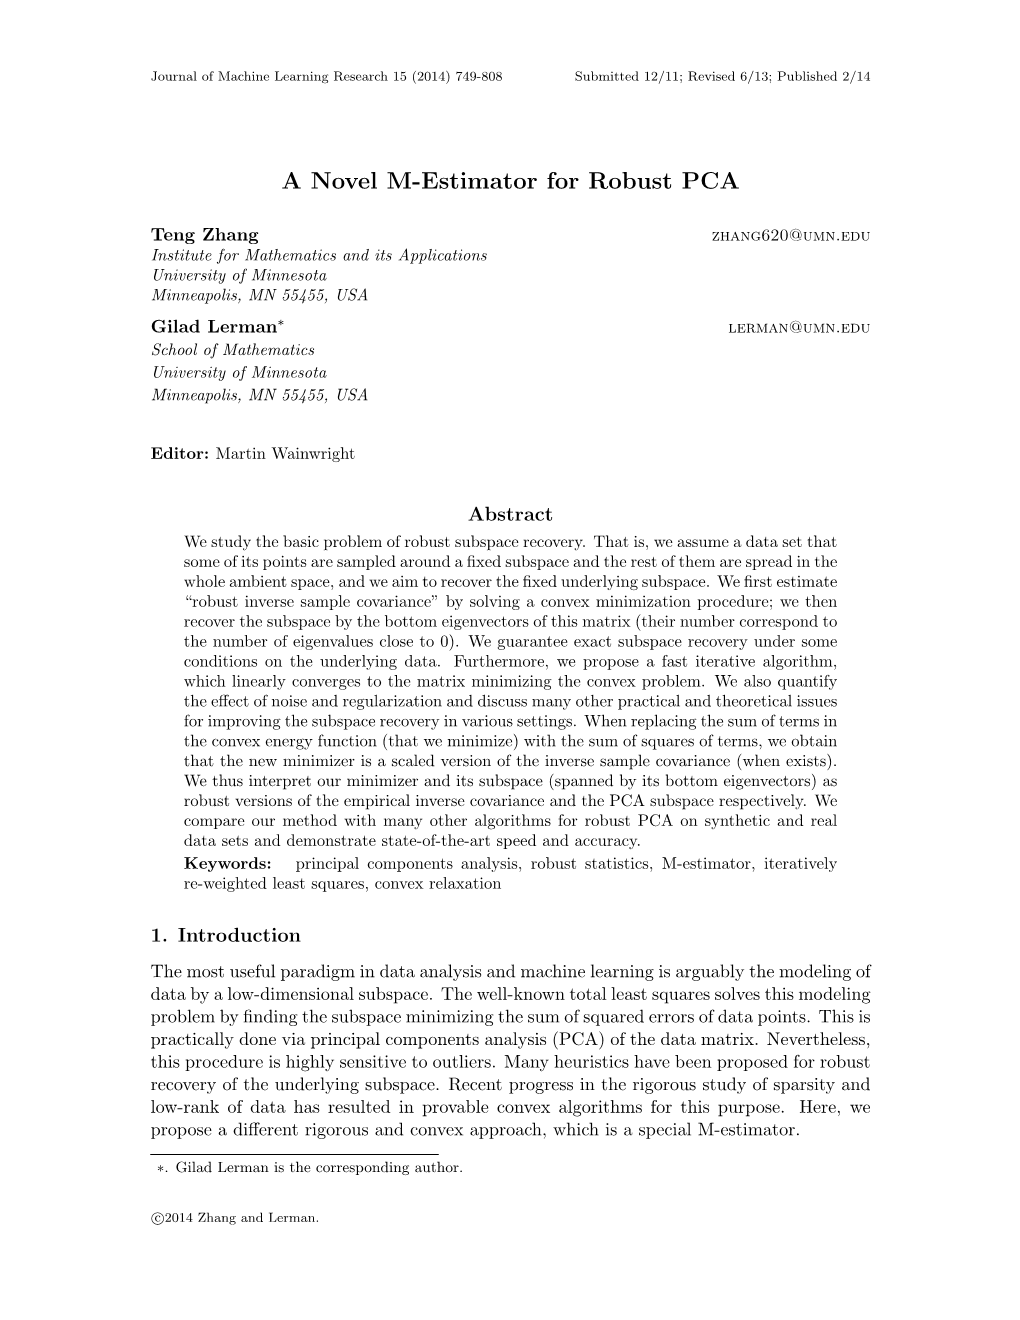 A Novel M-Estimator for Robust PCA